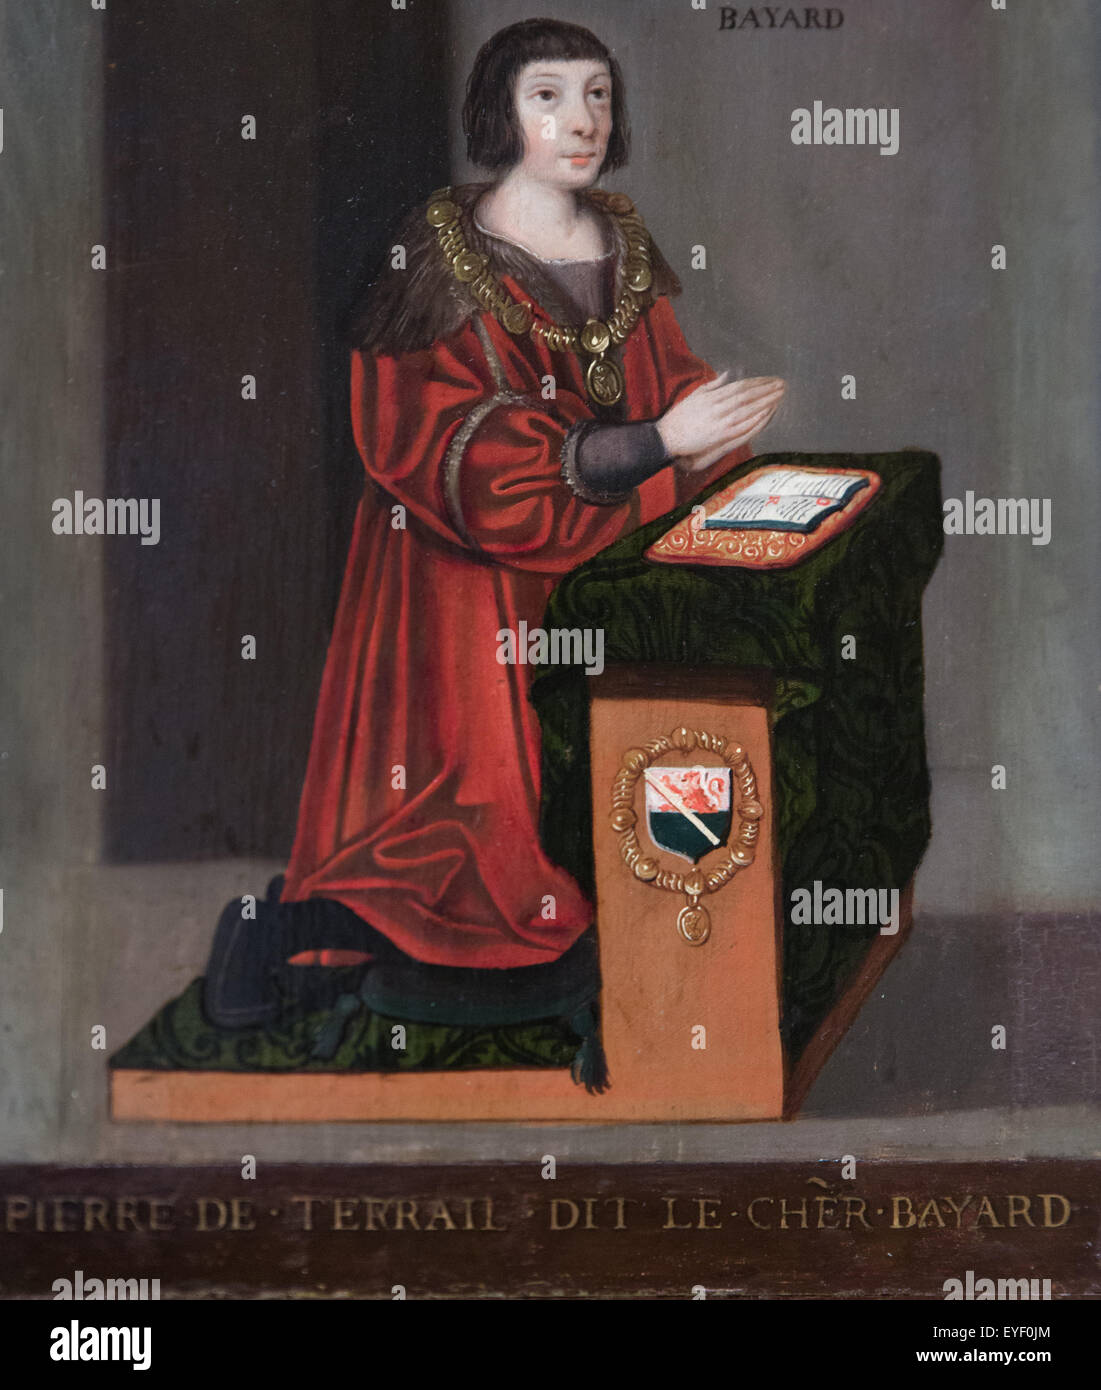 De Pierre Terrail, Señor de Bayard (1475-1524) 07/12/2013 - Colección del siglo XVI. Foto de stock